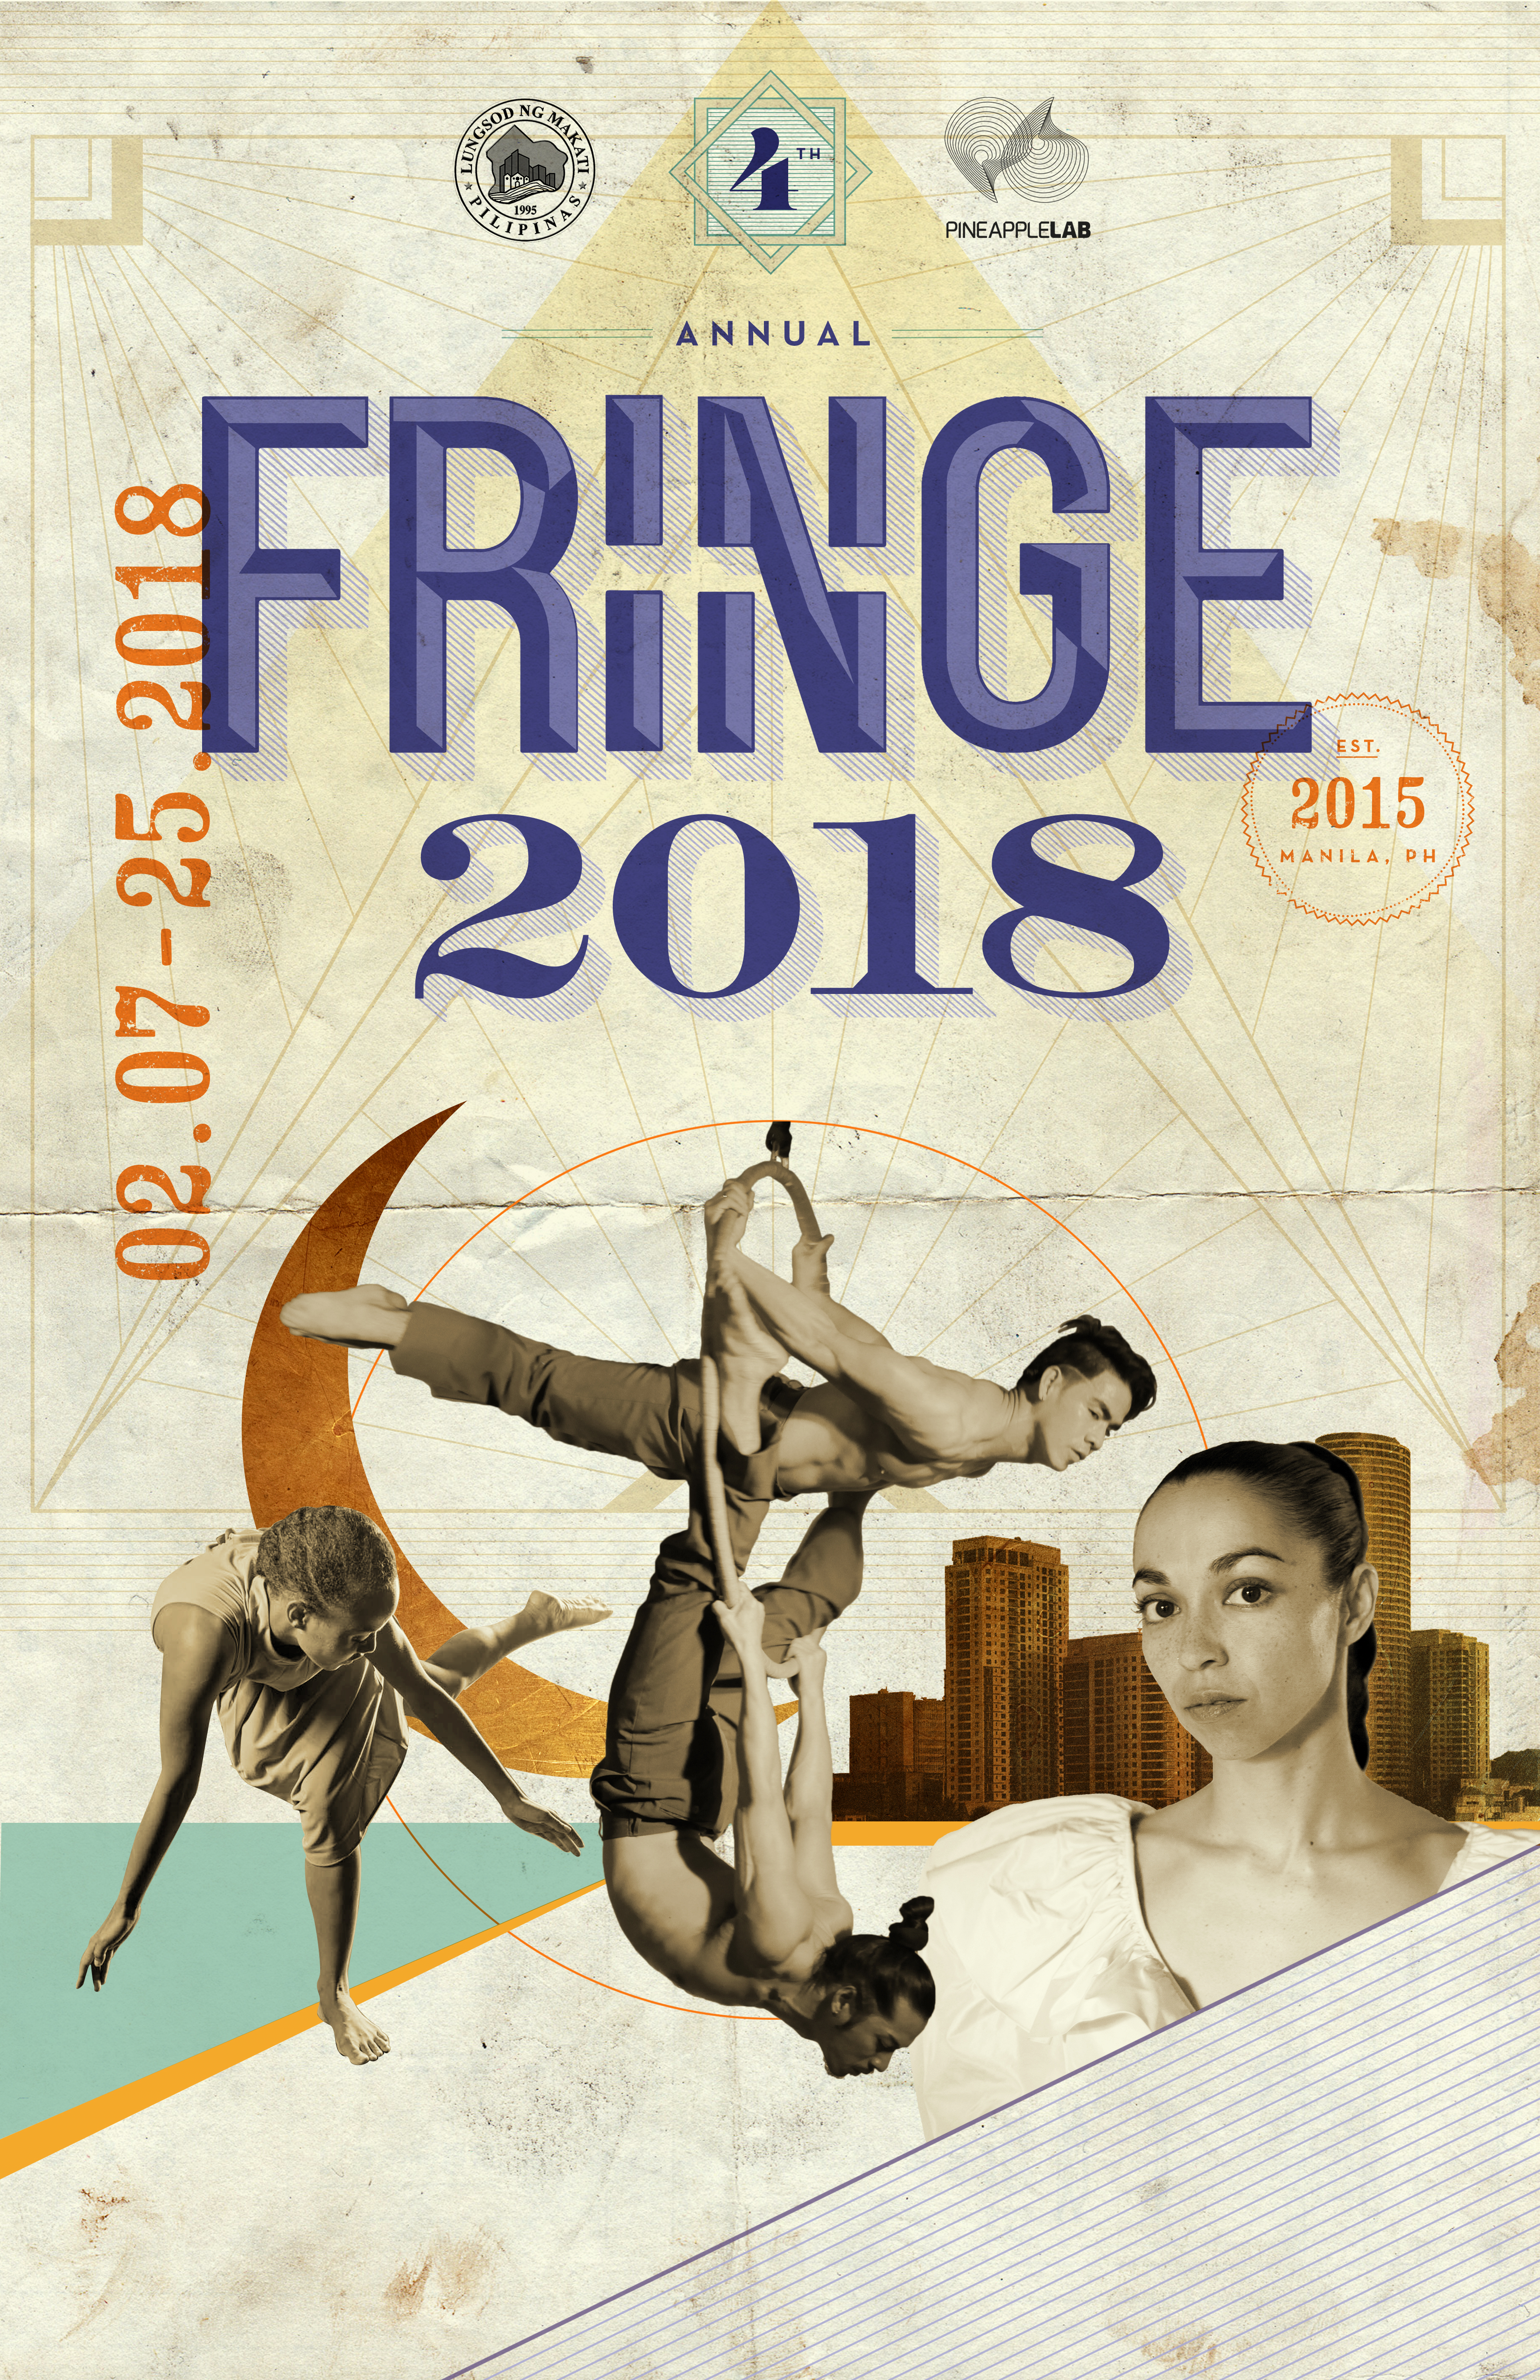 Fringe Festival 2018 will be heating up the Manila art scene